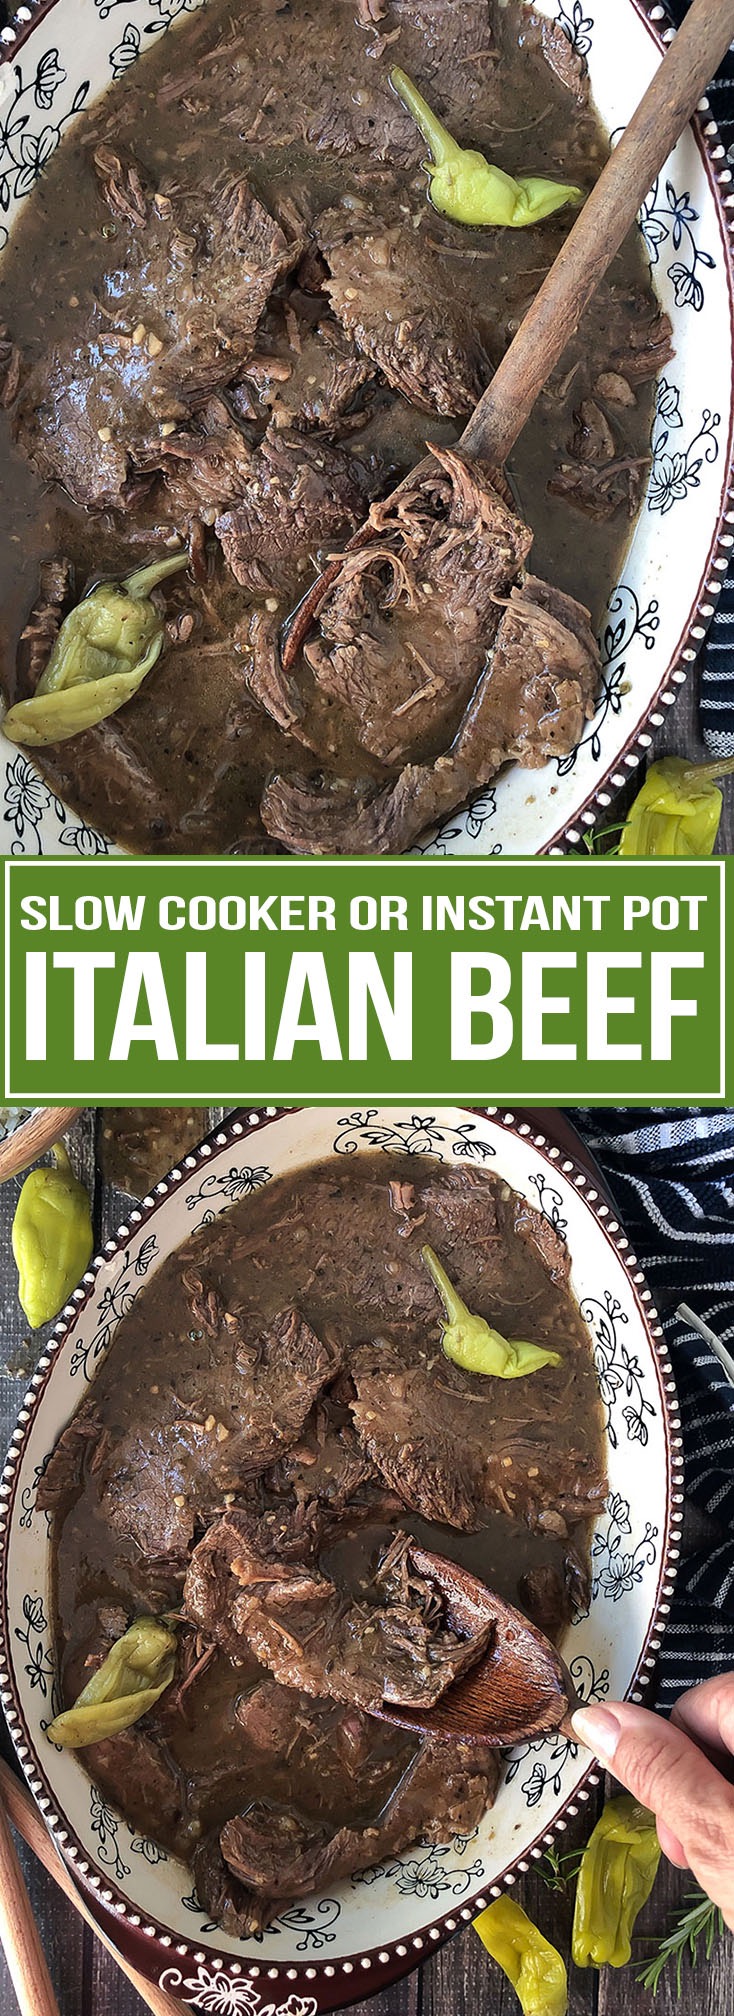 SLOW COOKER OR INSTANT POT ITALIAN BEEF